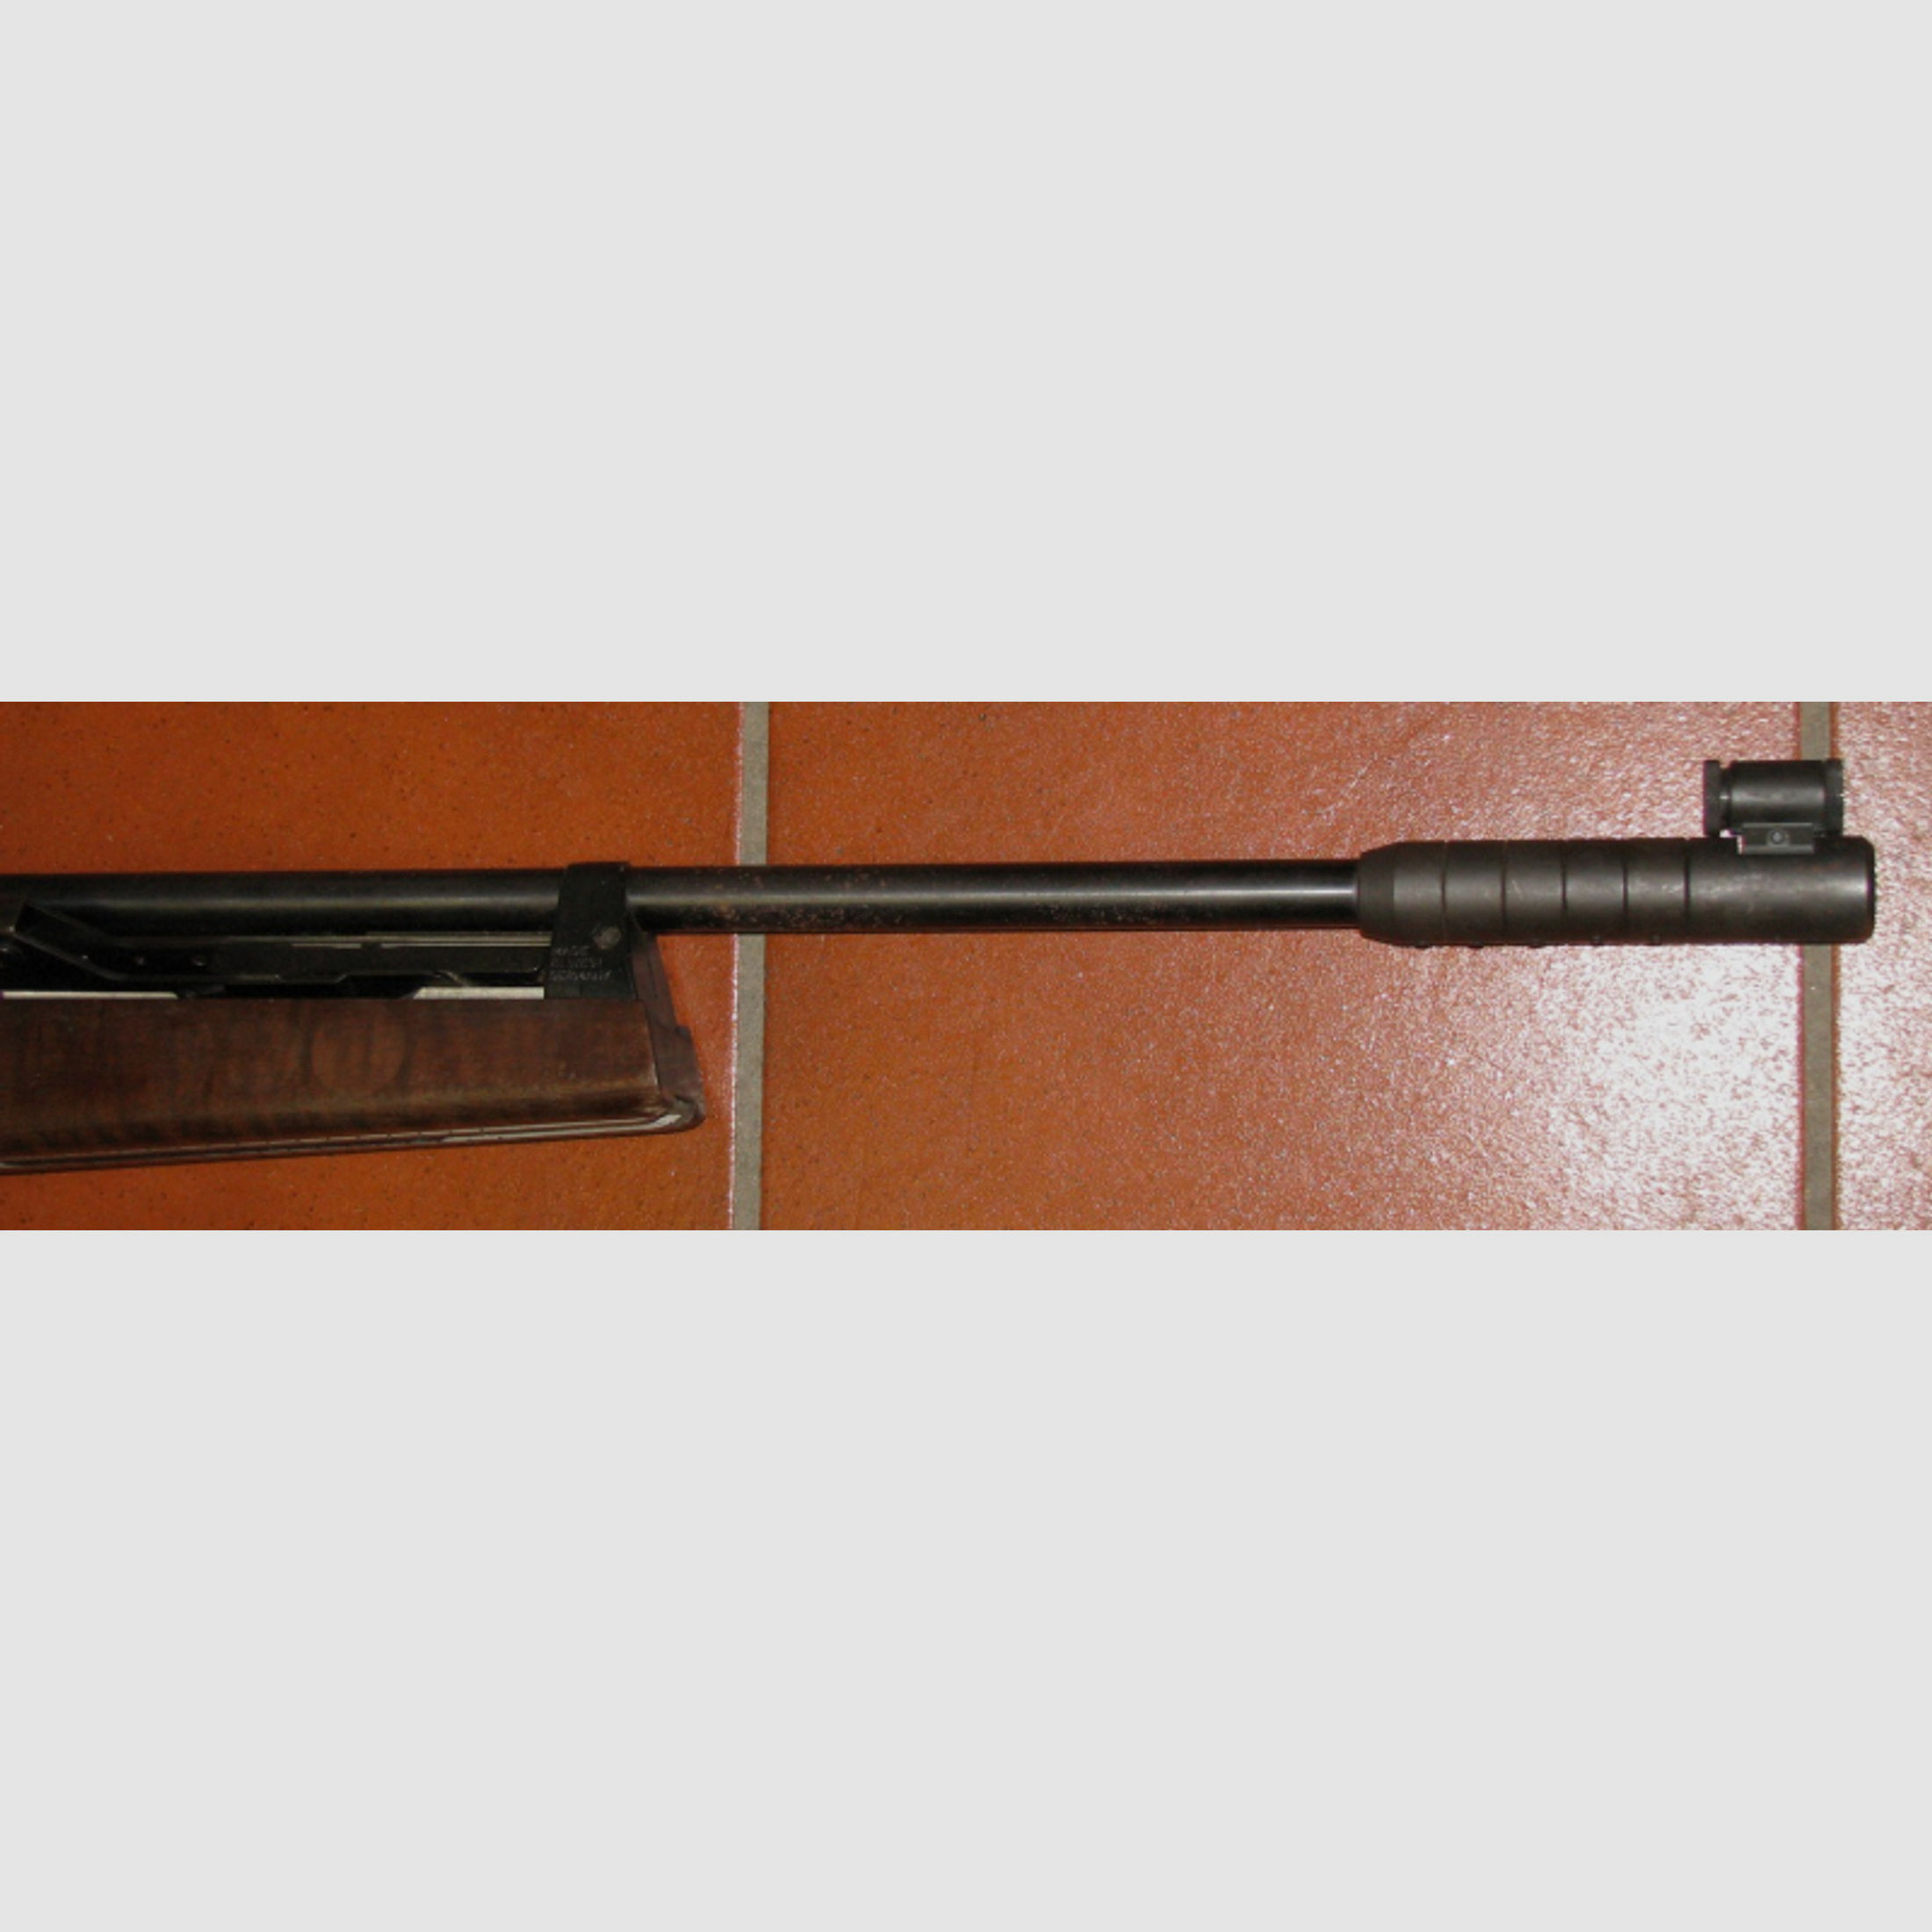 DIANA Luftgewehr, eine DIANA 100 mit Original Diopter und F - Stempel, Bitte ansehen